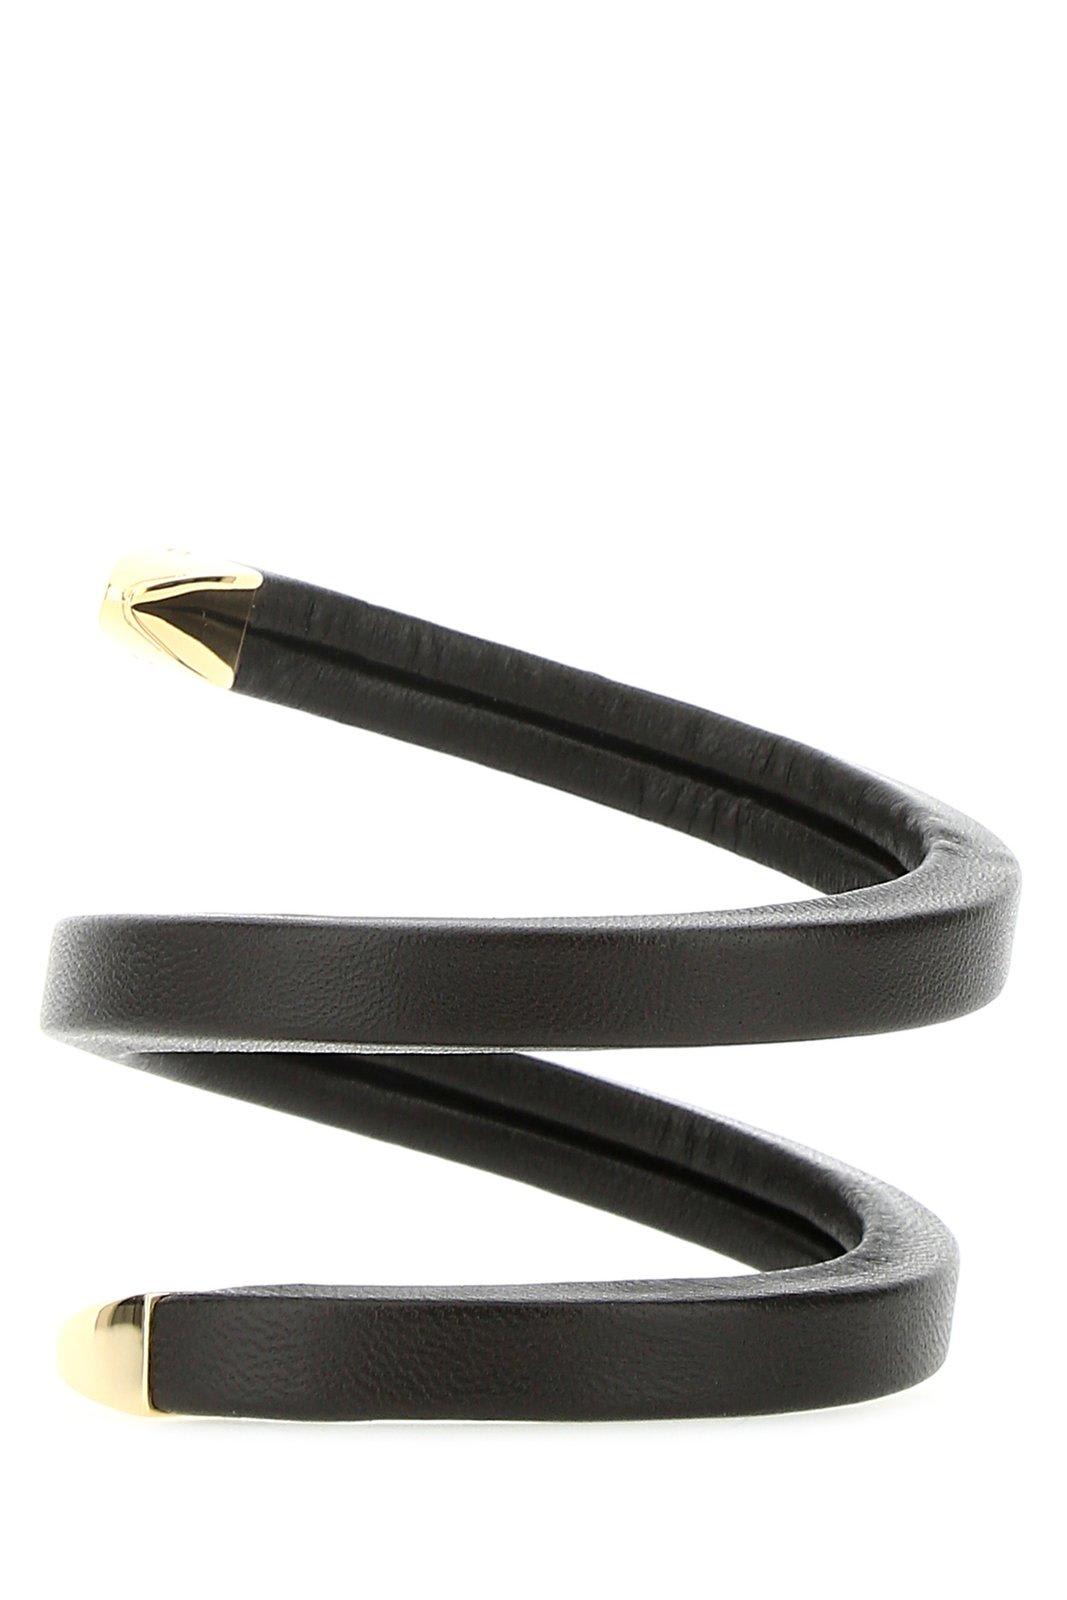 Bottega Veneta Charm Bracelet in Black